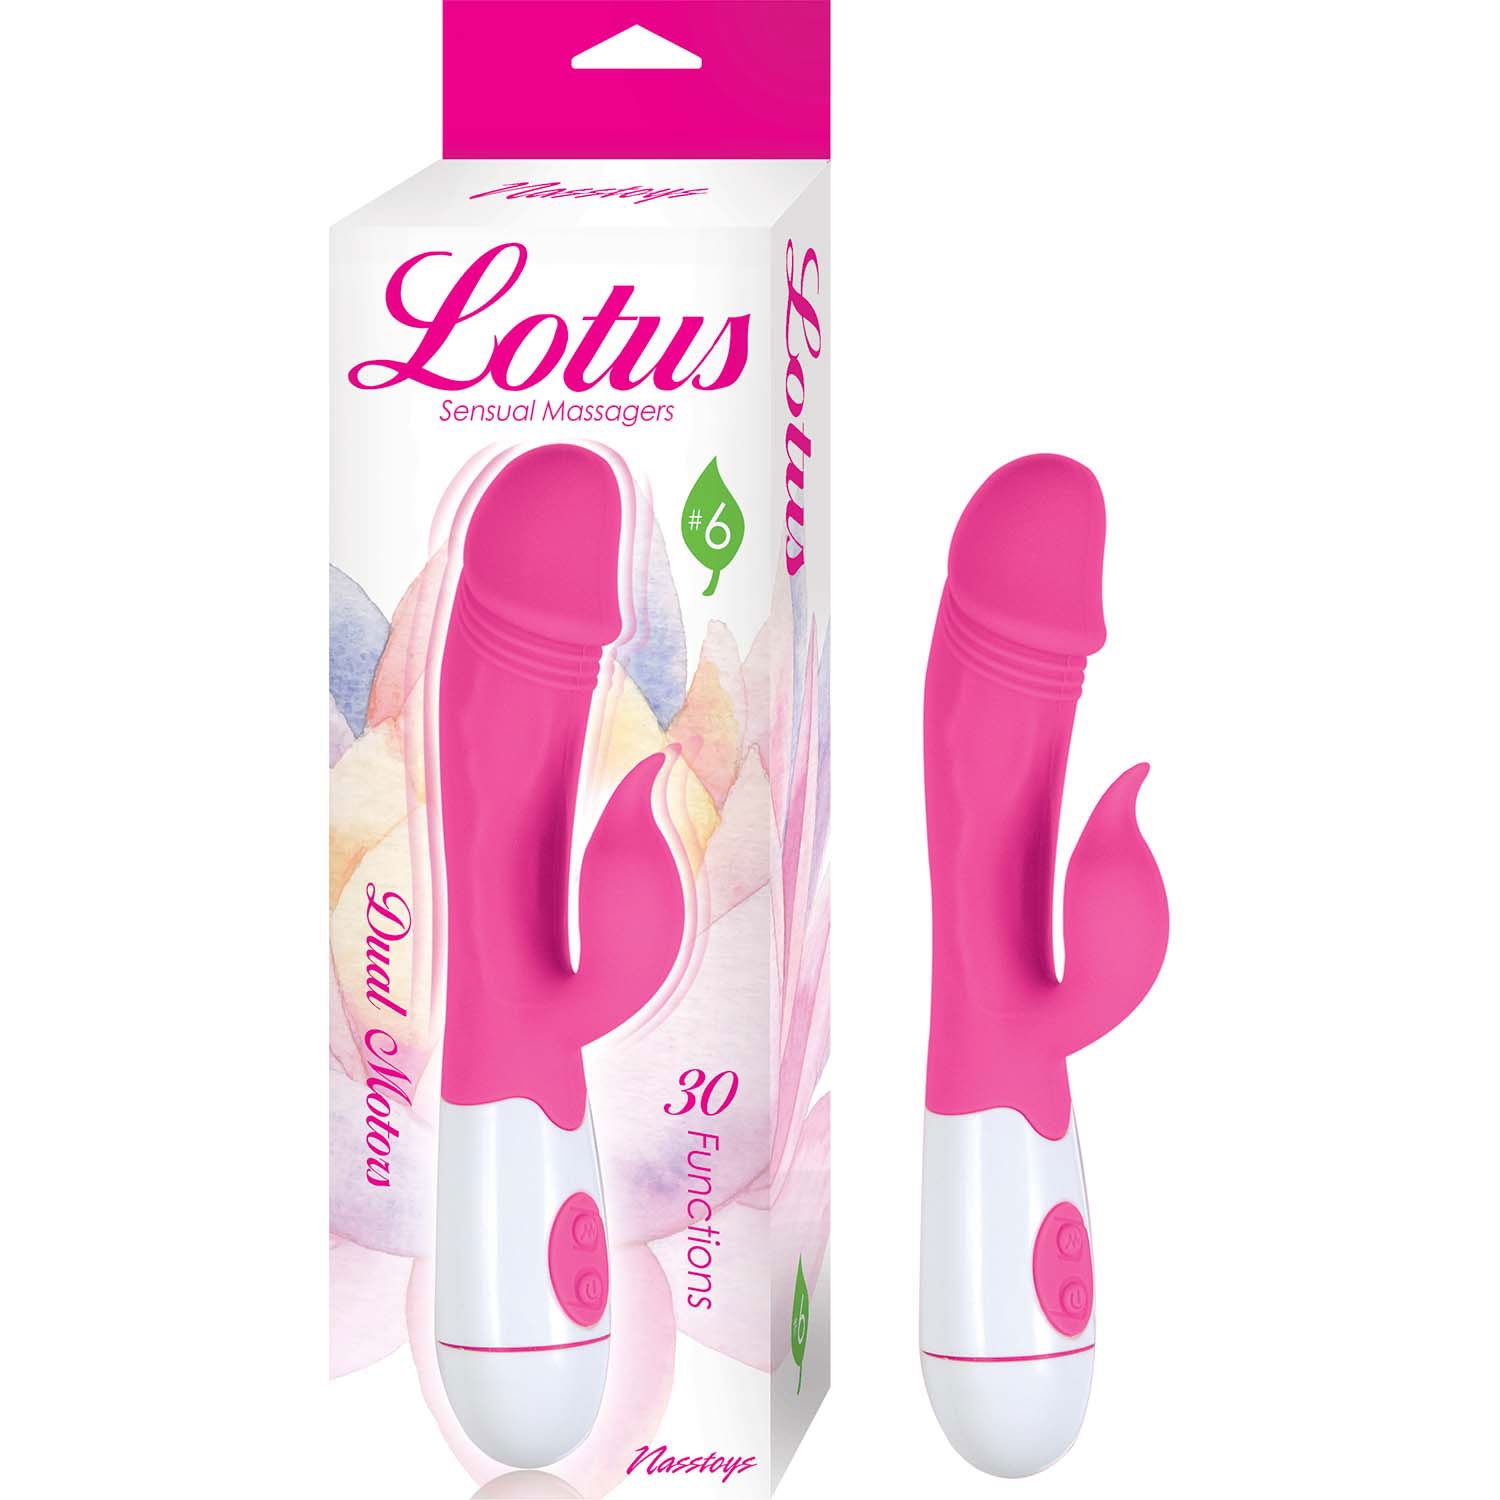 Lotus Sensual Massagers - Pink-2